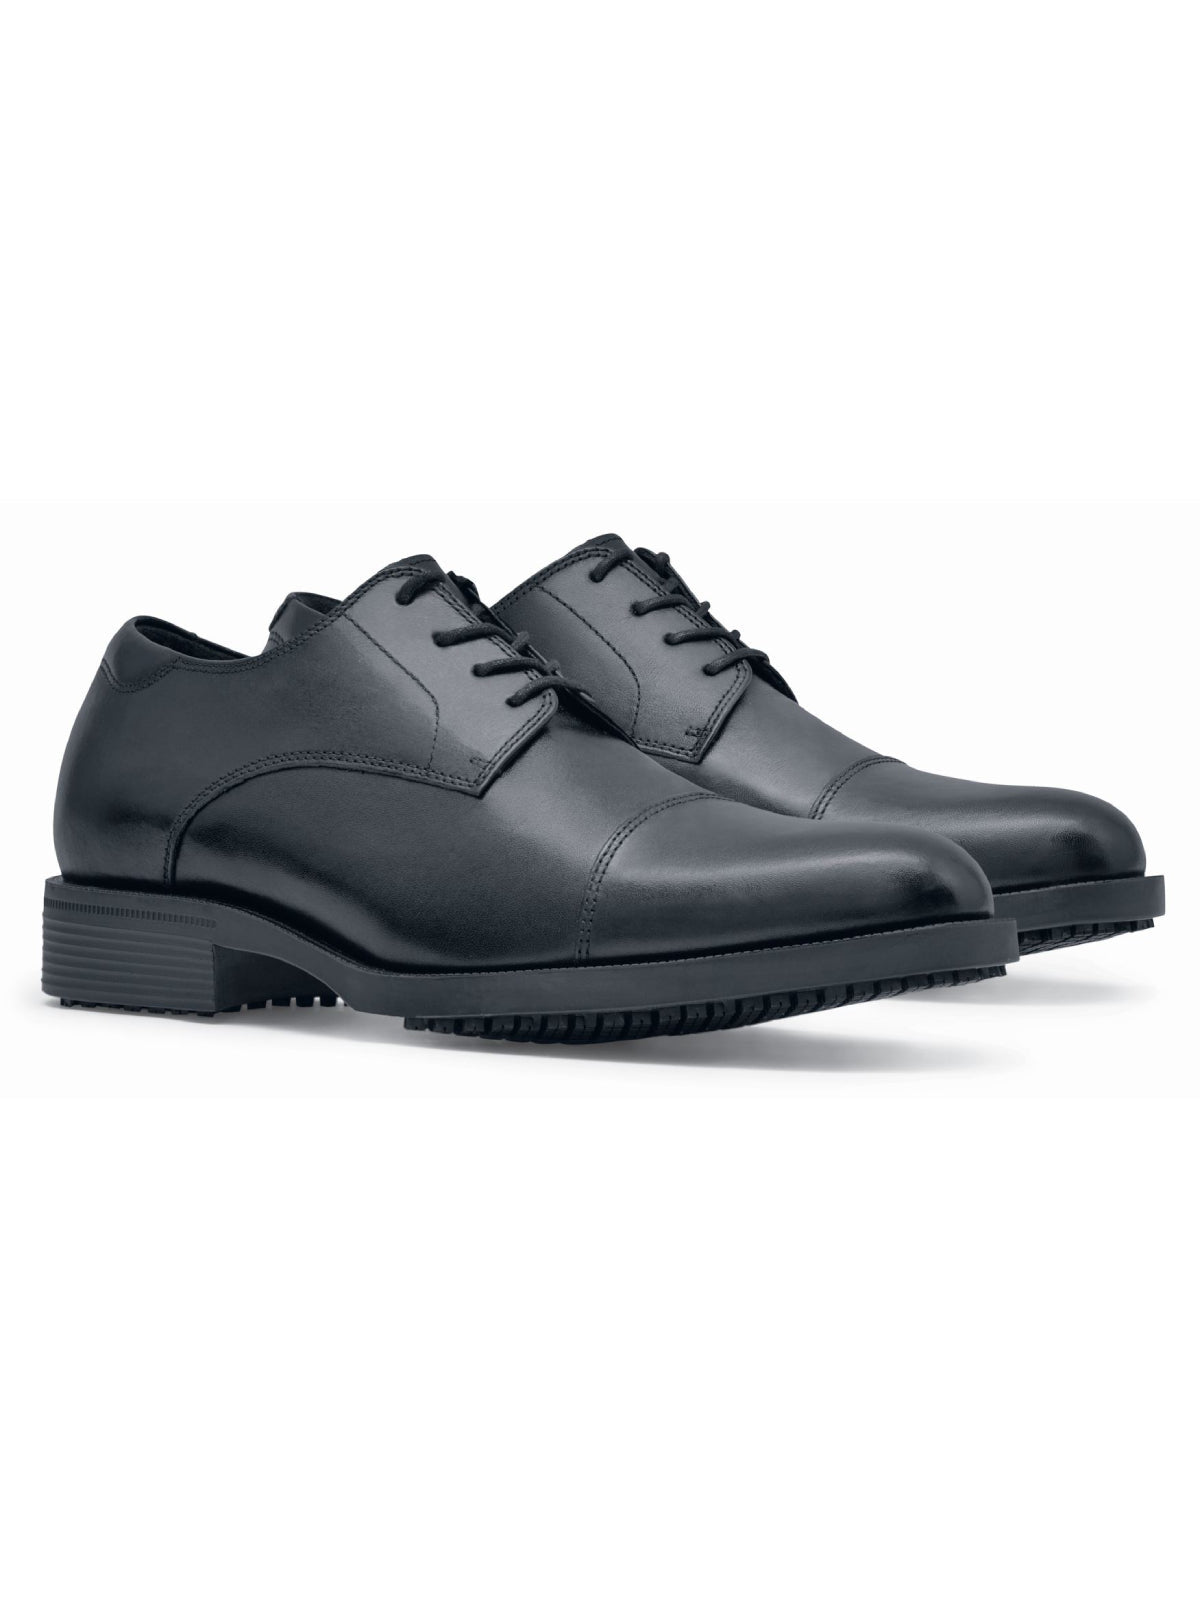 Men's Work Shoe Senator Black by Shoes For Crews -  ChefsCotton